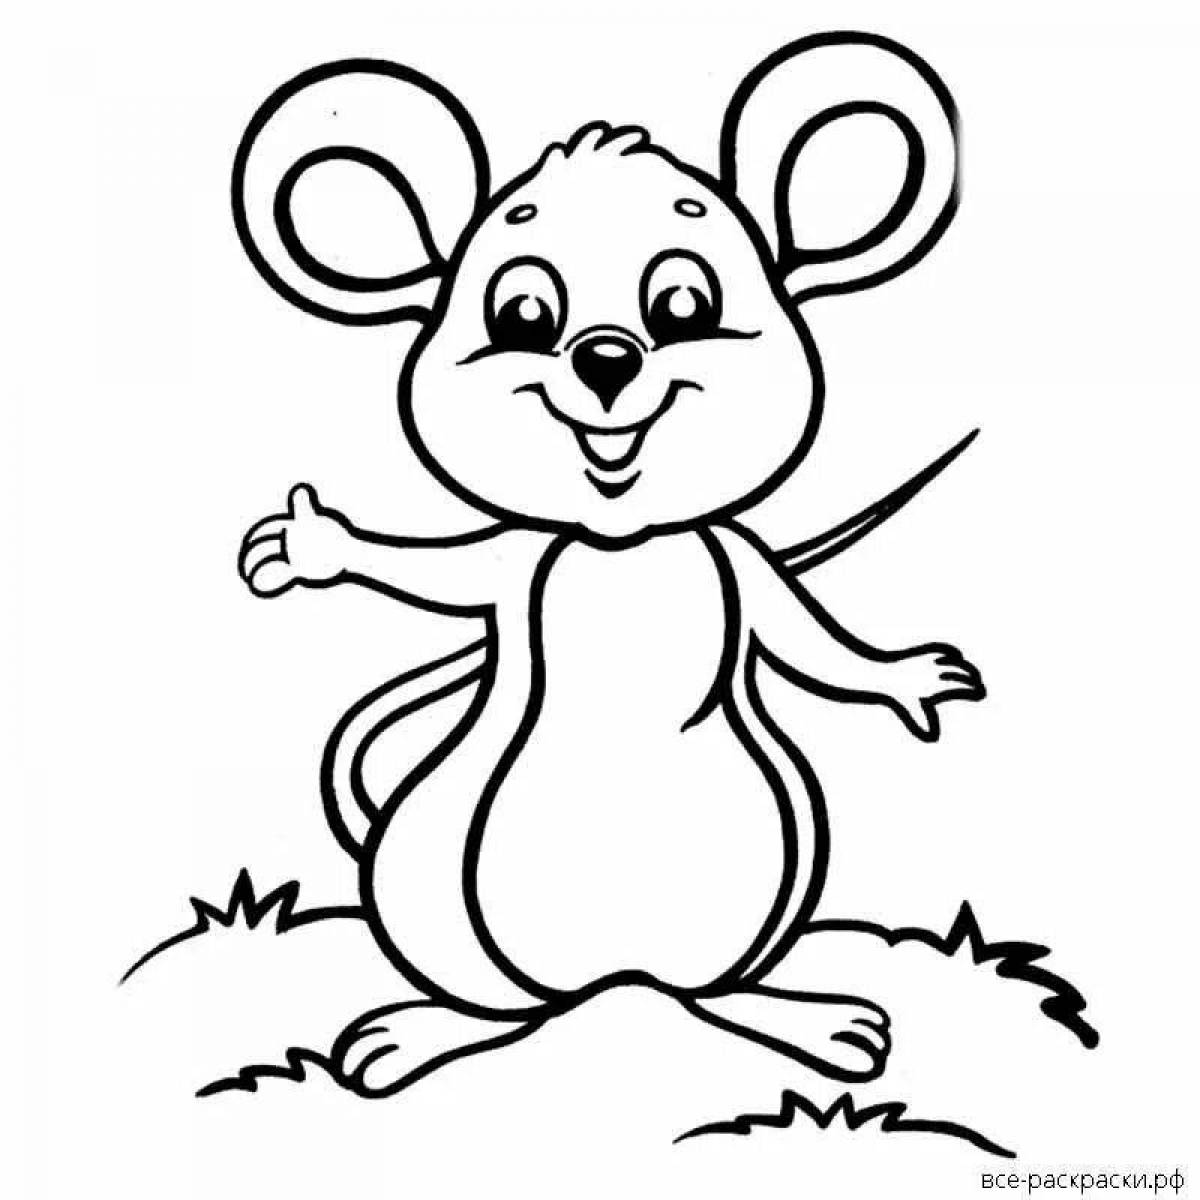 Coloring cute little mouse